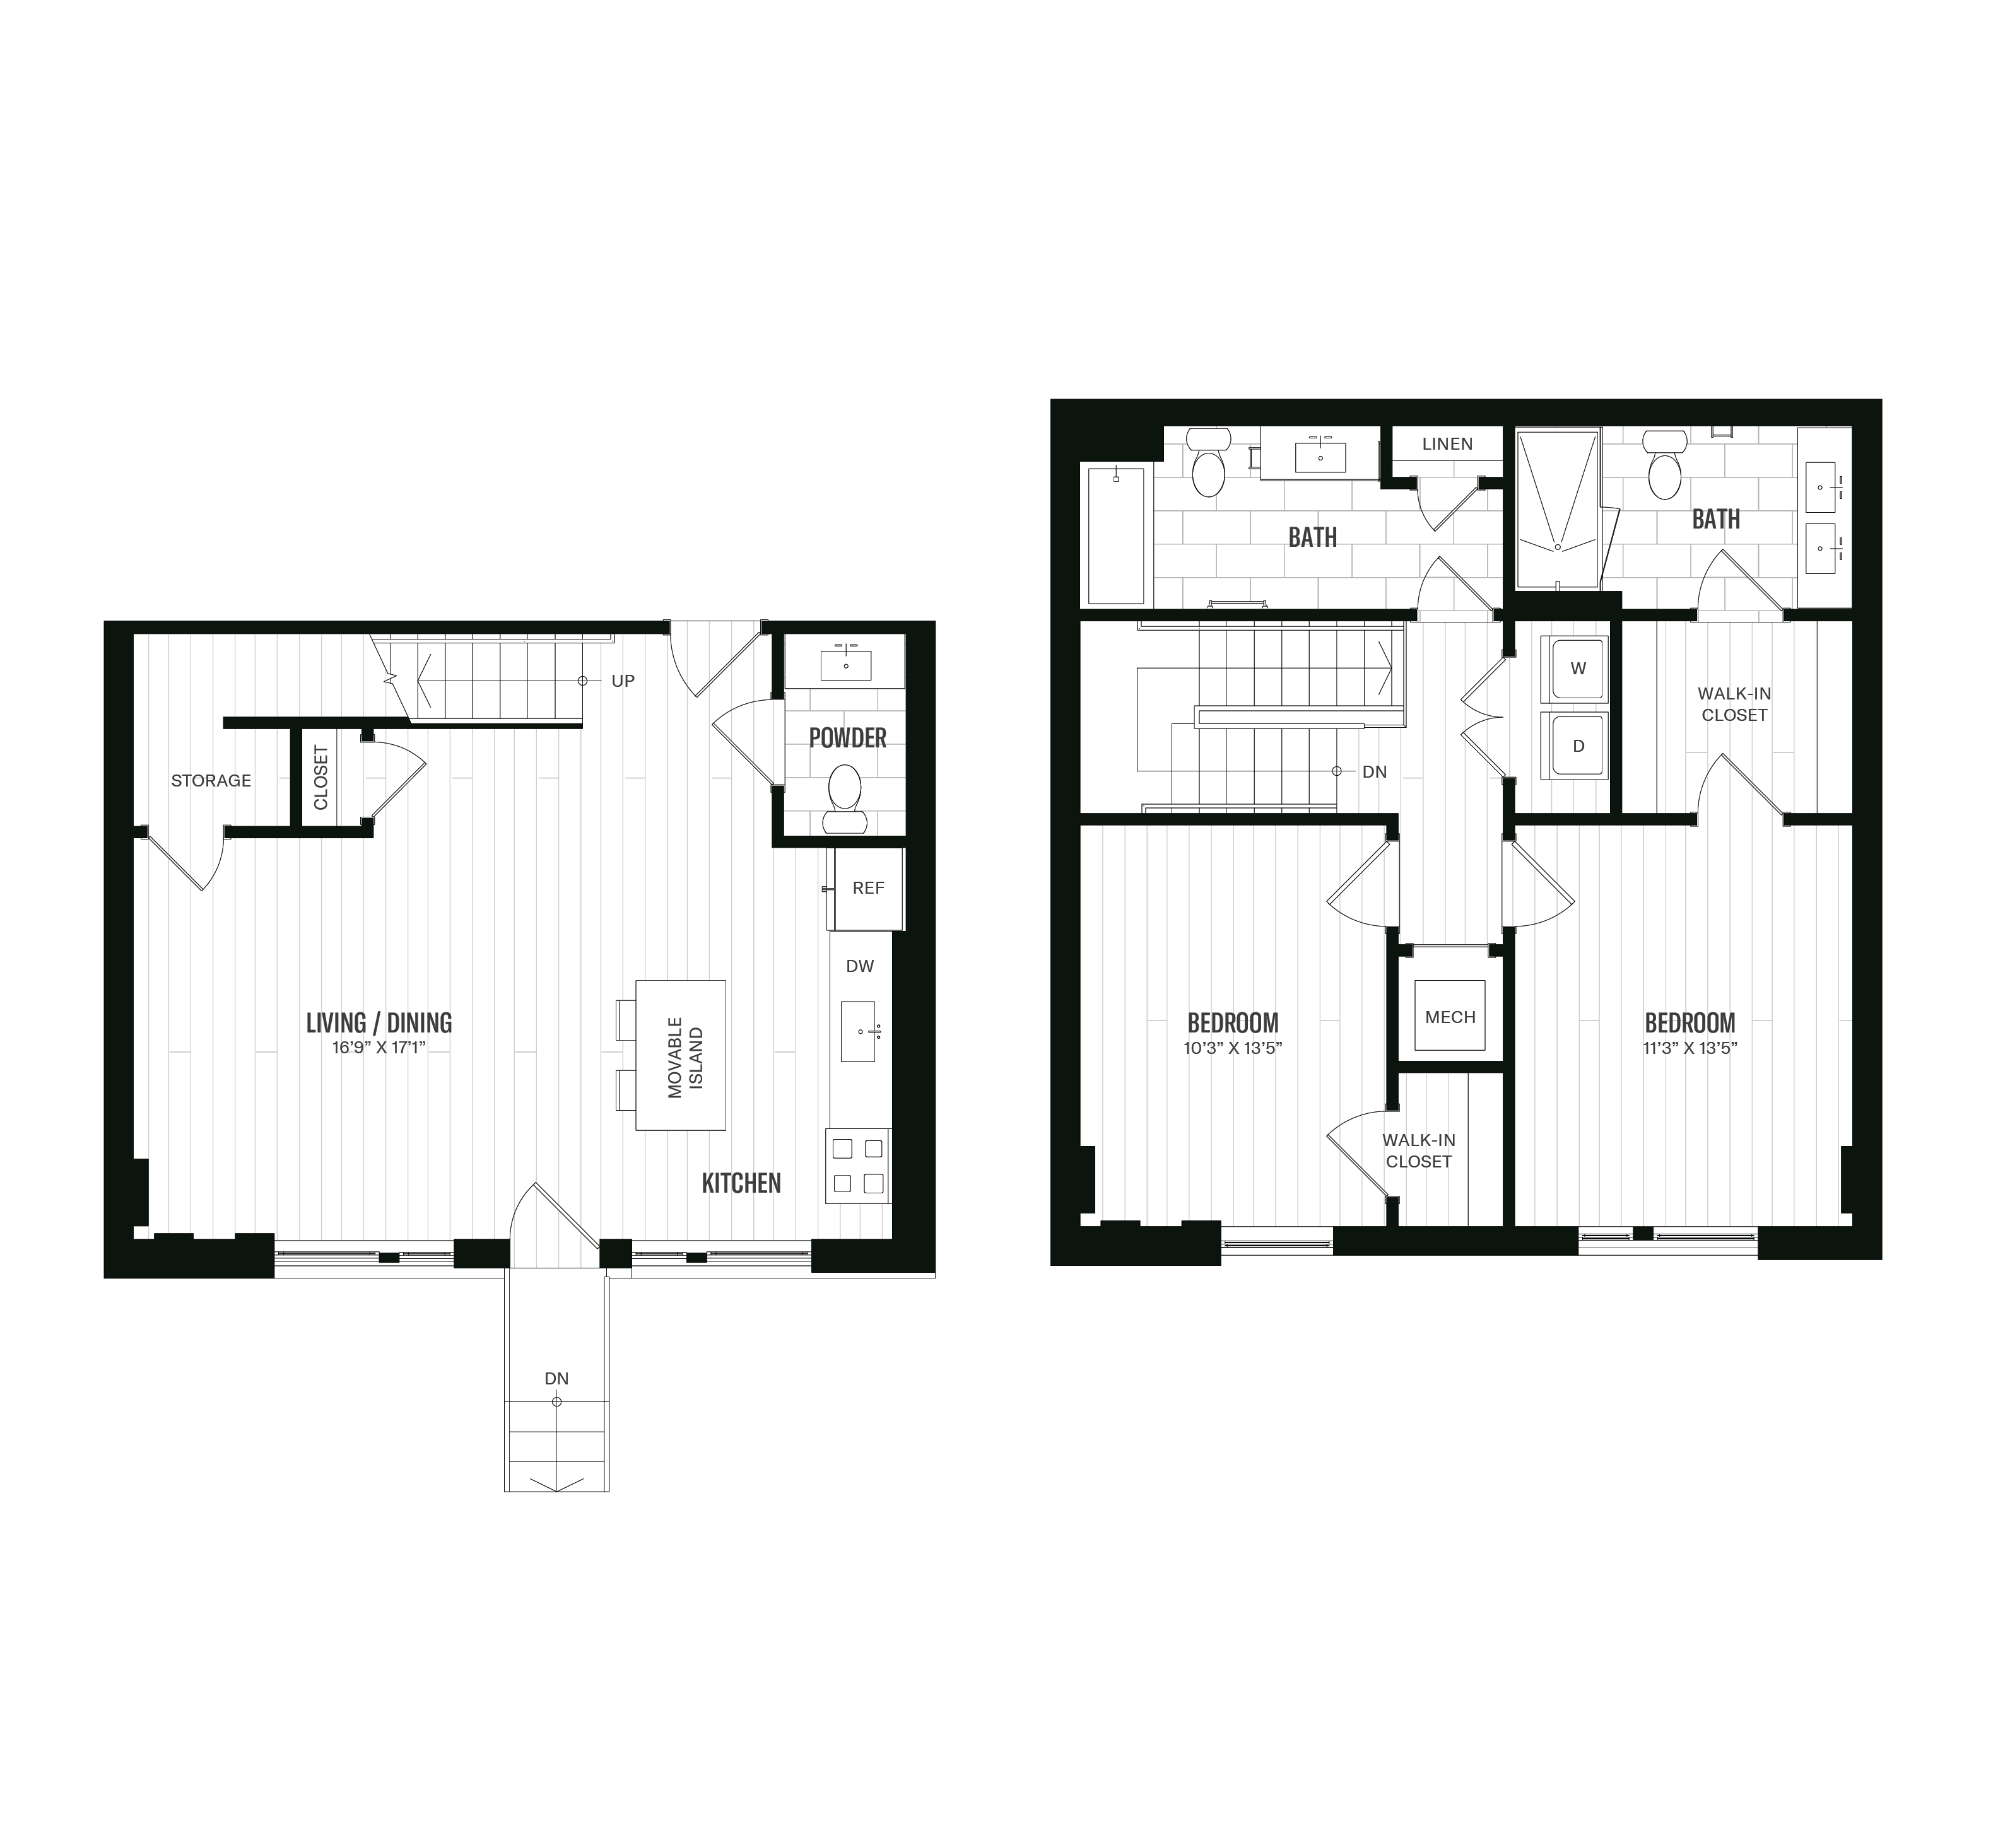 Floorplan image of unit 158